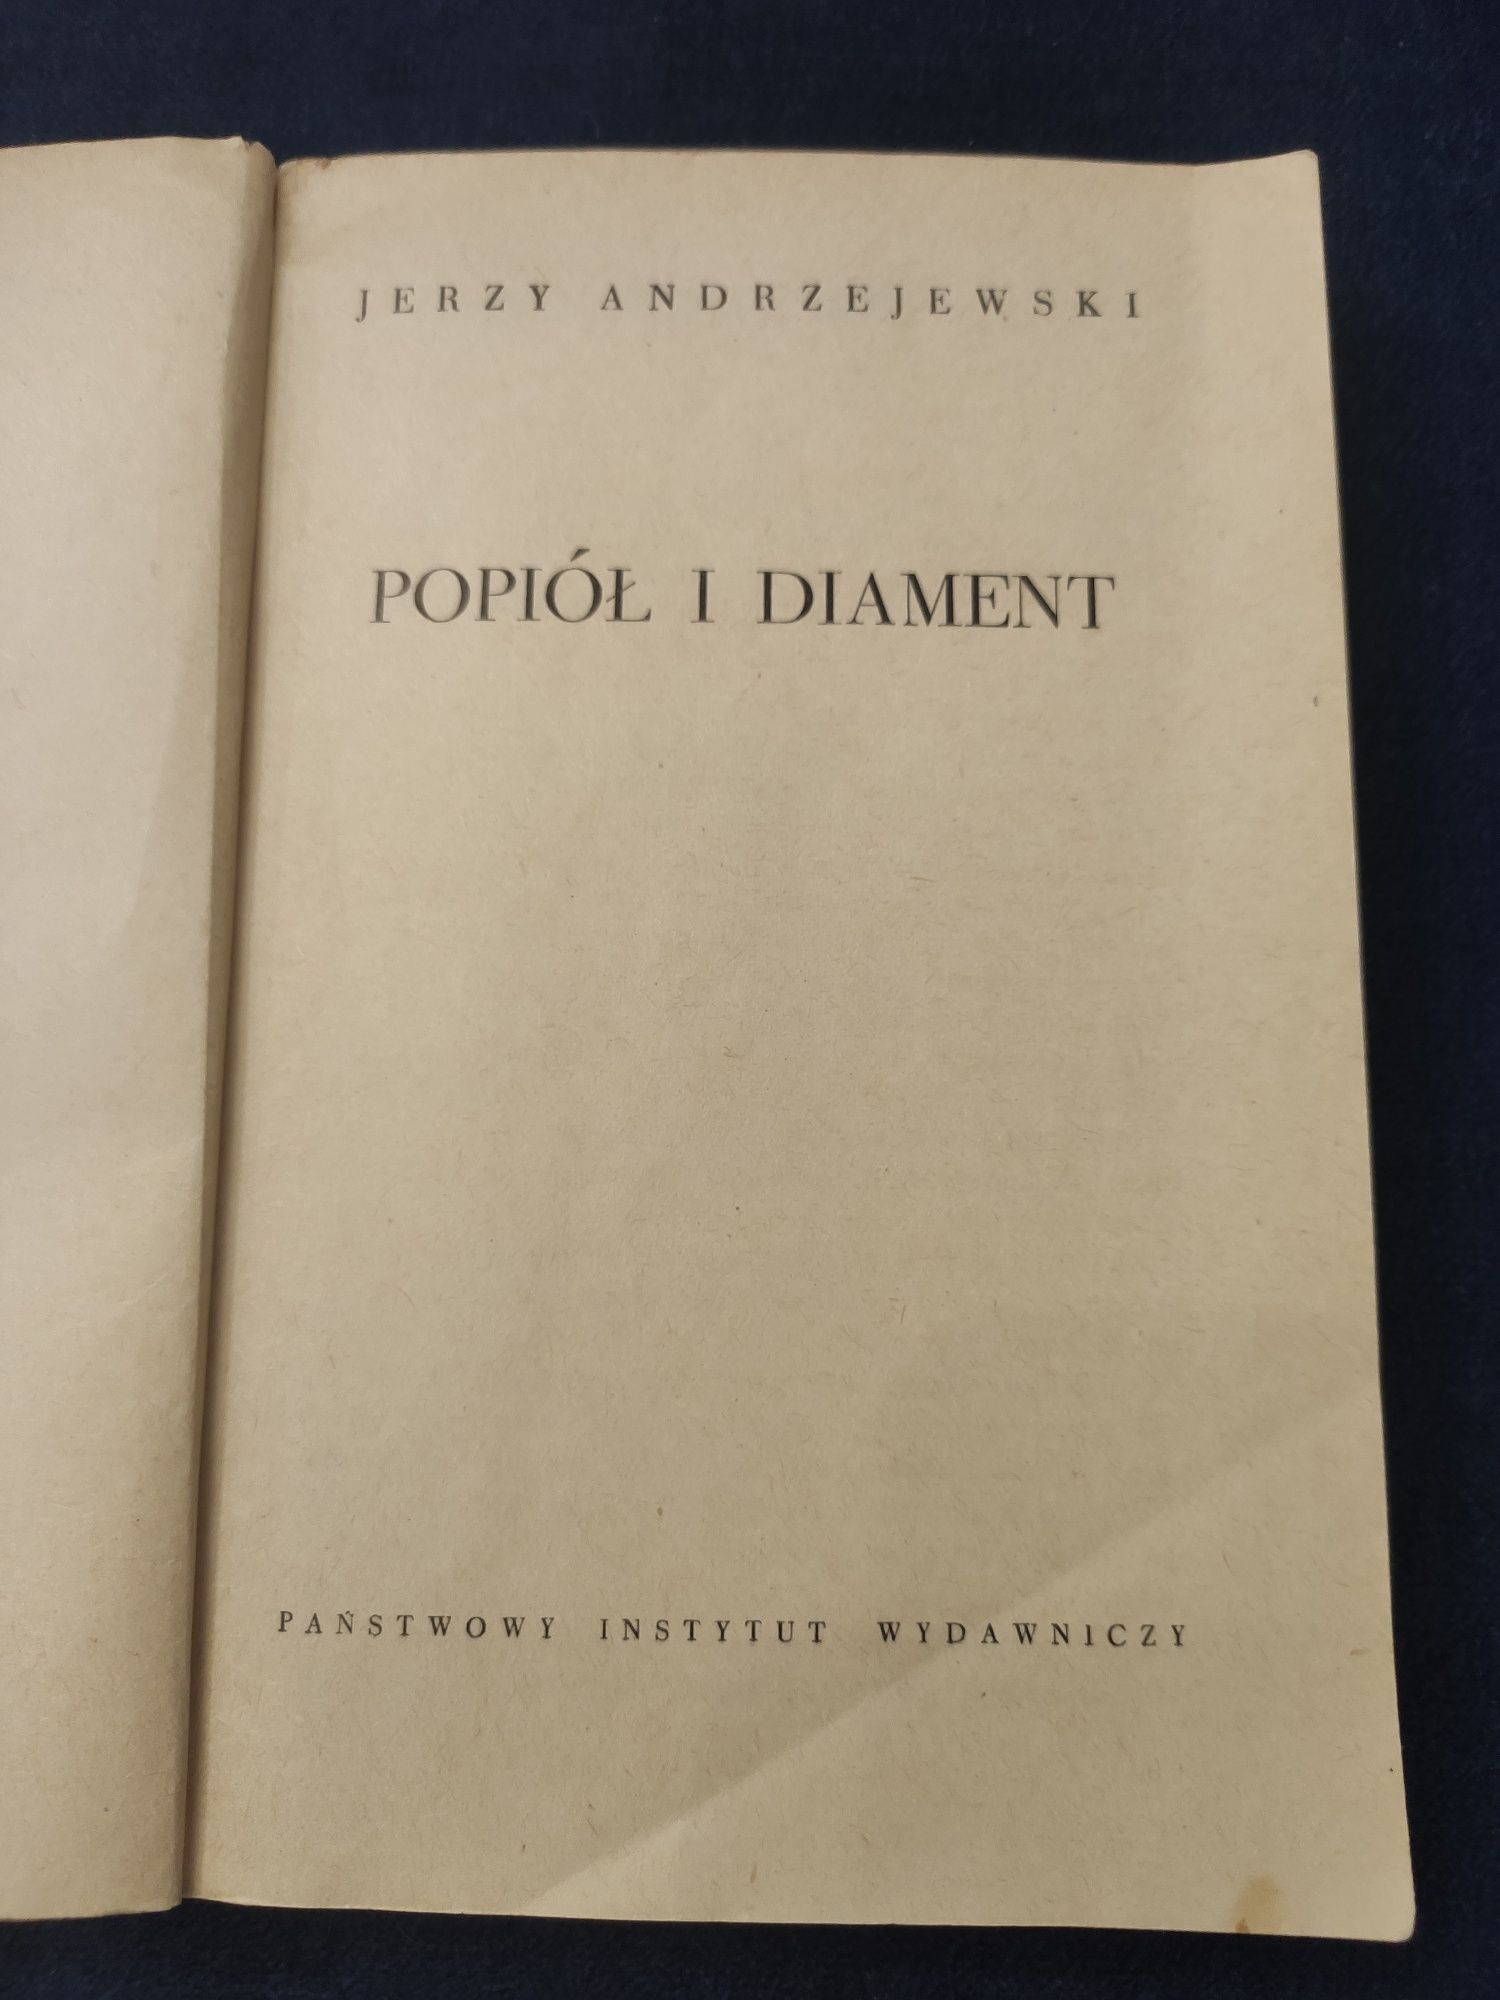 Książka ,,Popiół i diament" Jerzy Andrzejewski